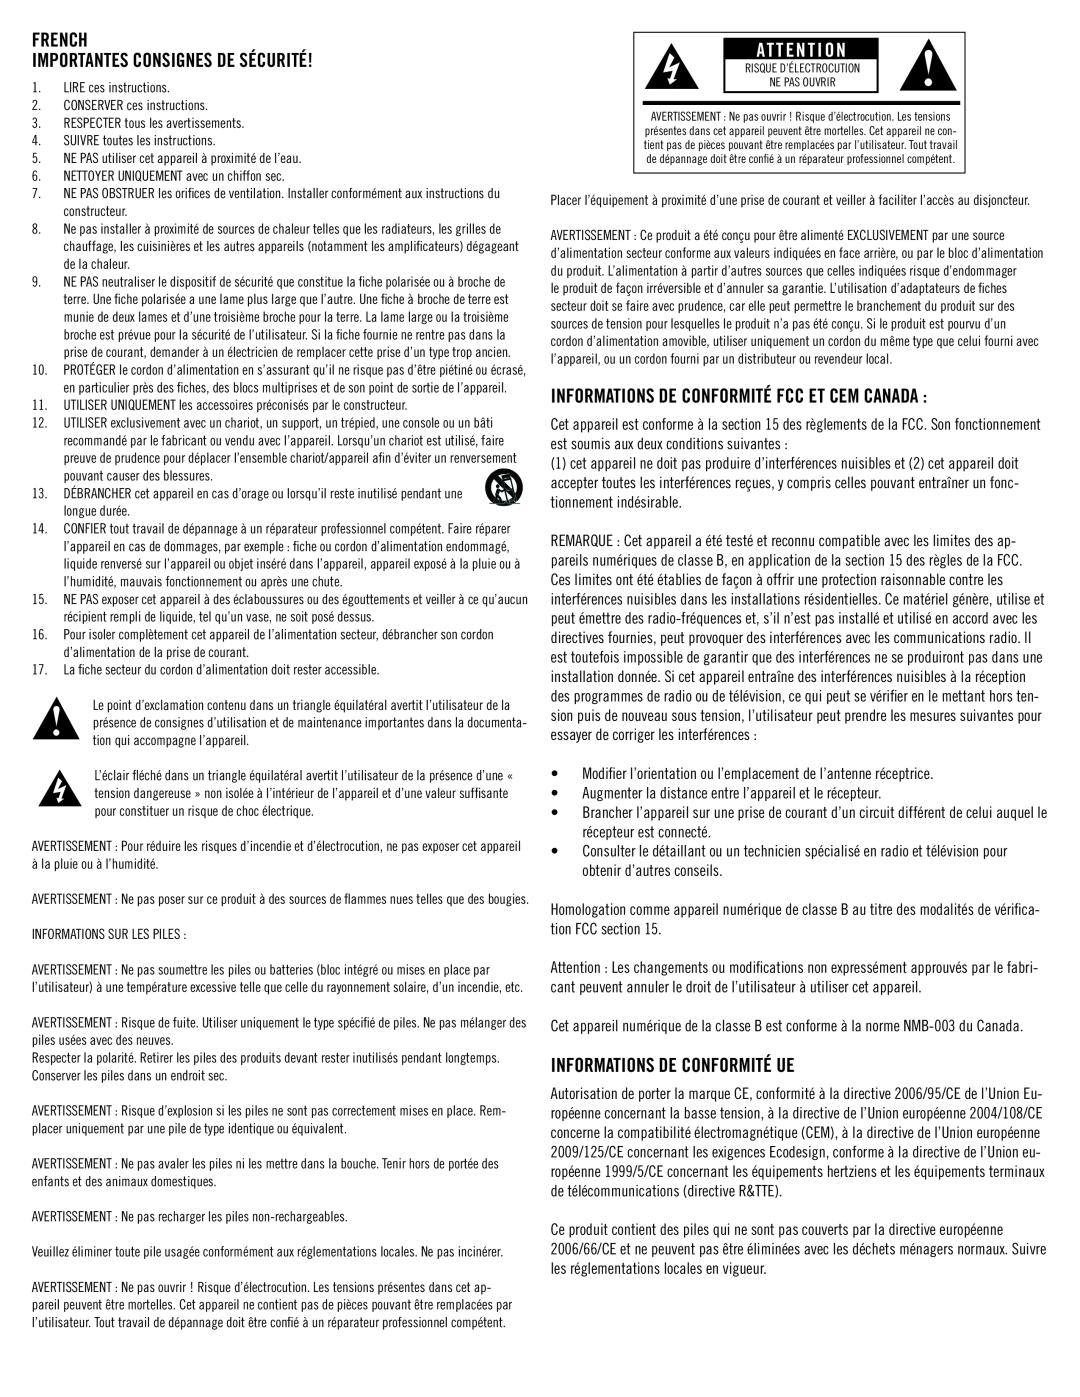 Klipsch SB 1 owner manual french Importantes CONSIGNES de sécurité, Informations De Conformité Ue 